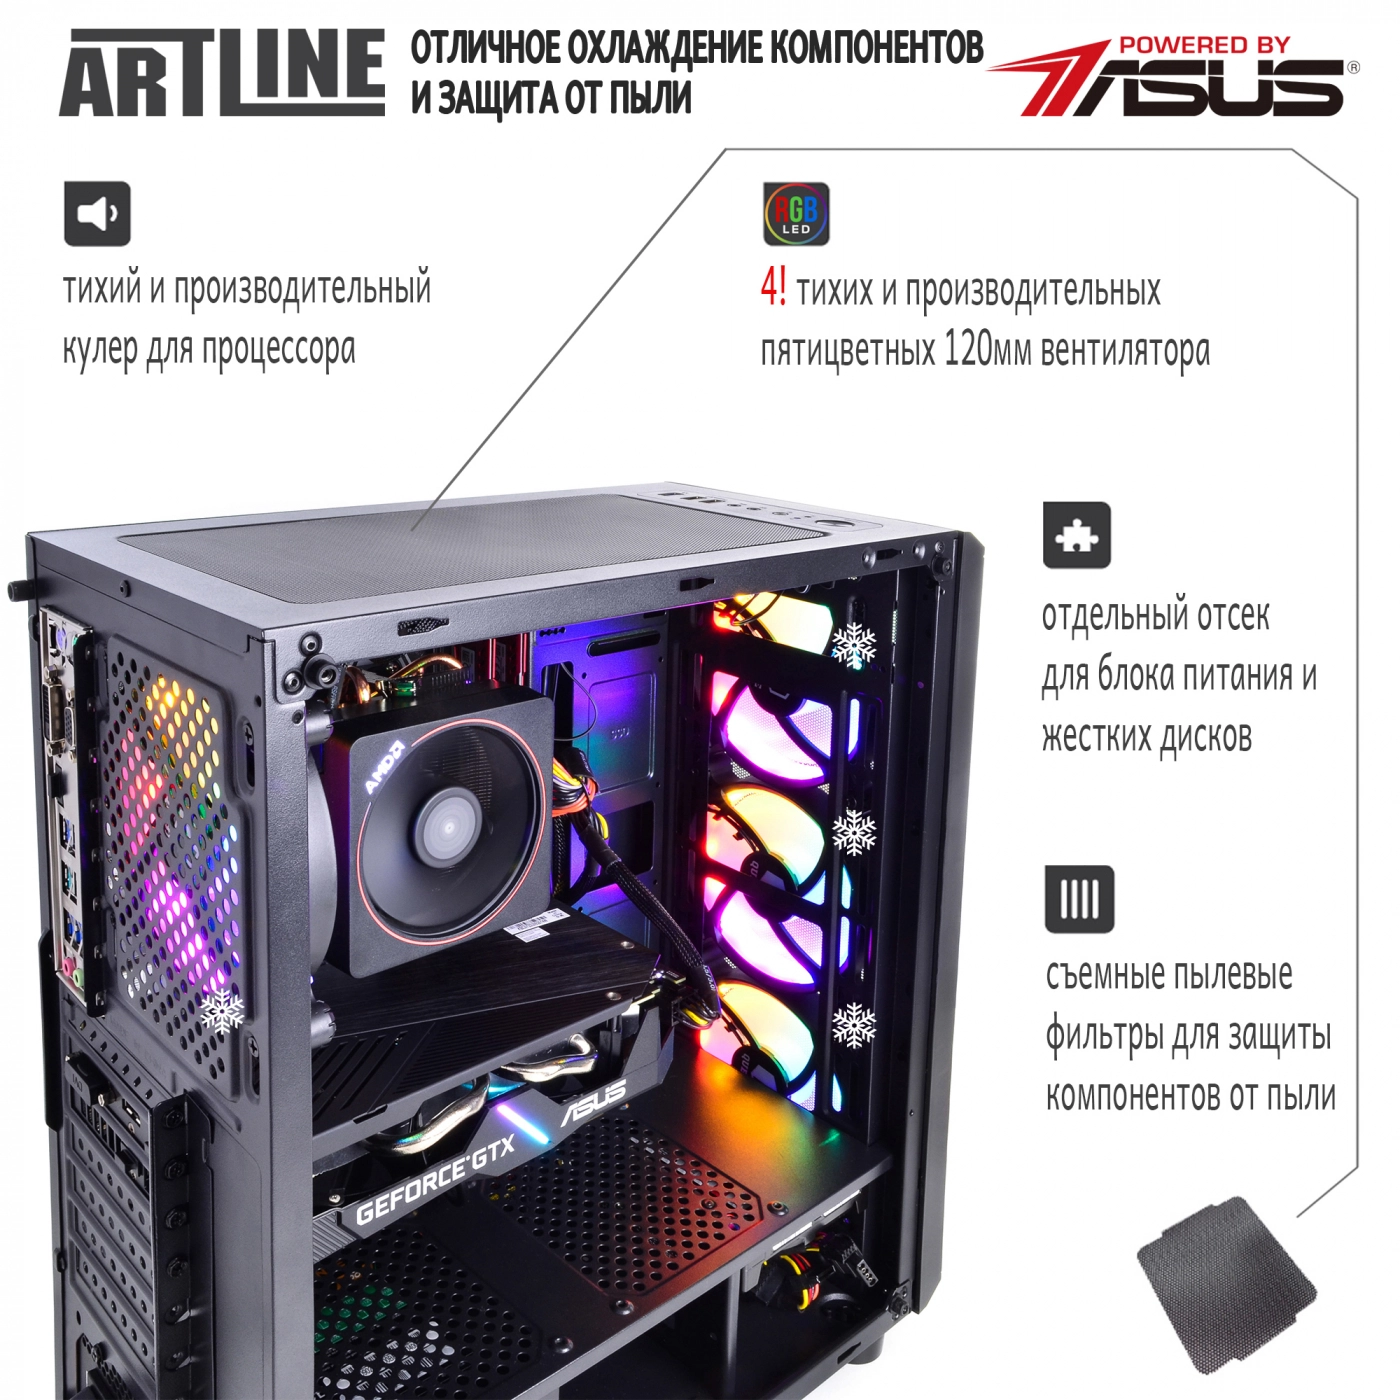 Купить Компьютер ARTLINE Gaming X63v10 - фото 3